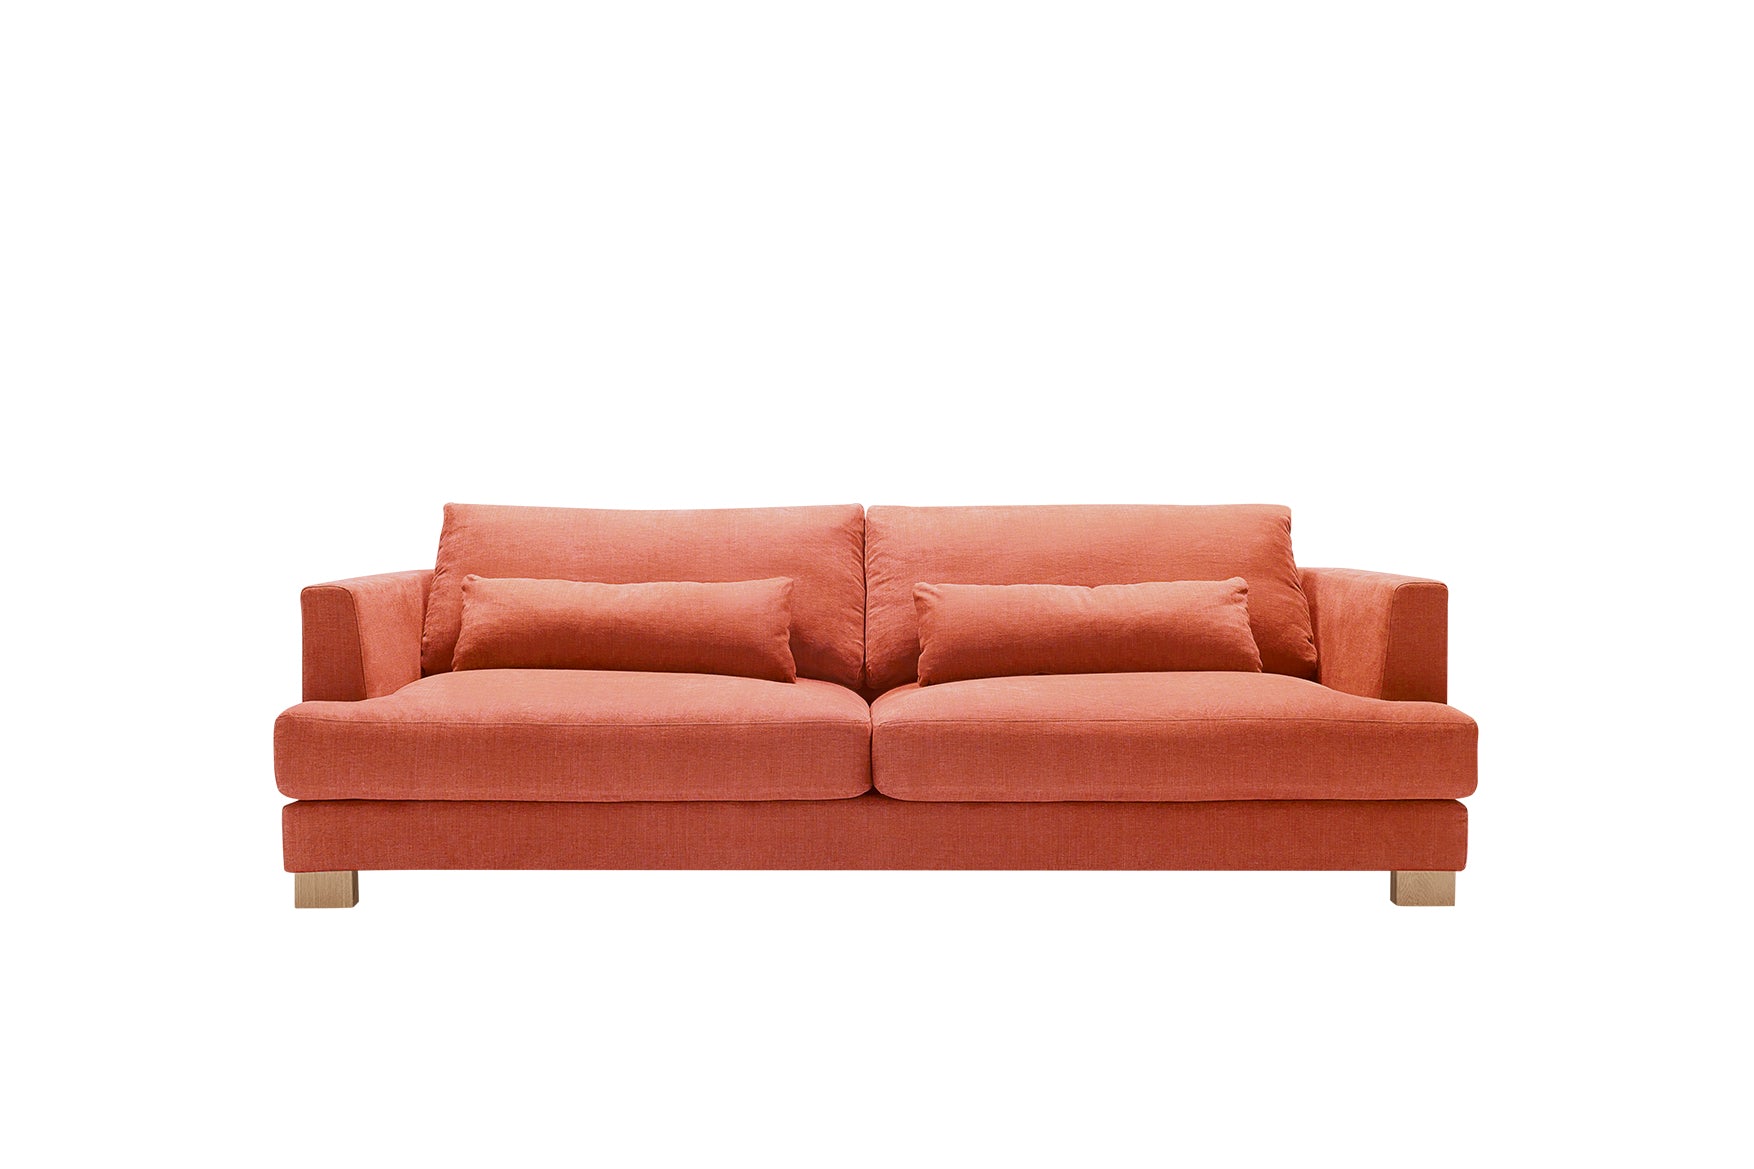 Mastrella Bruno 3 Seater Sofa